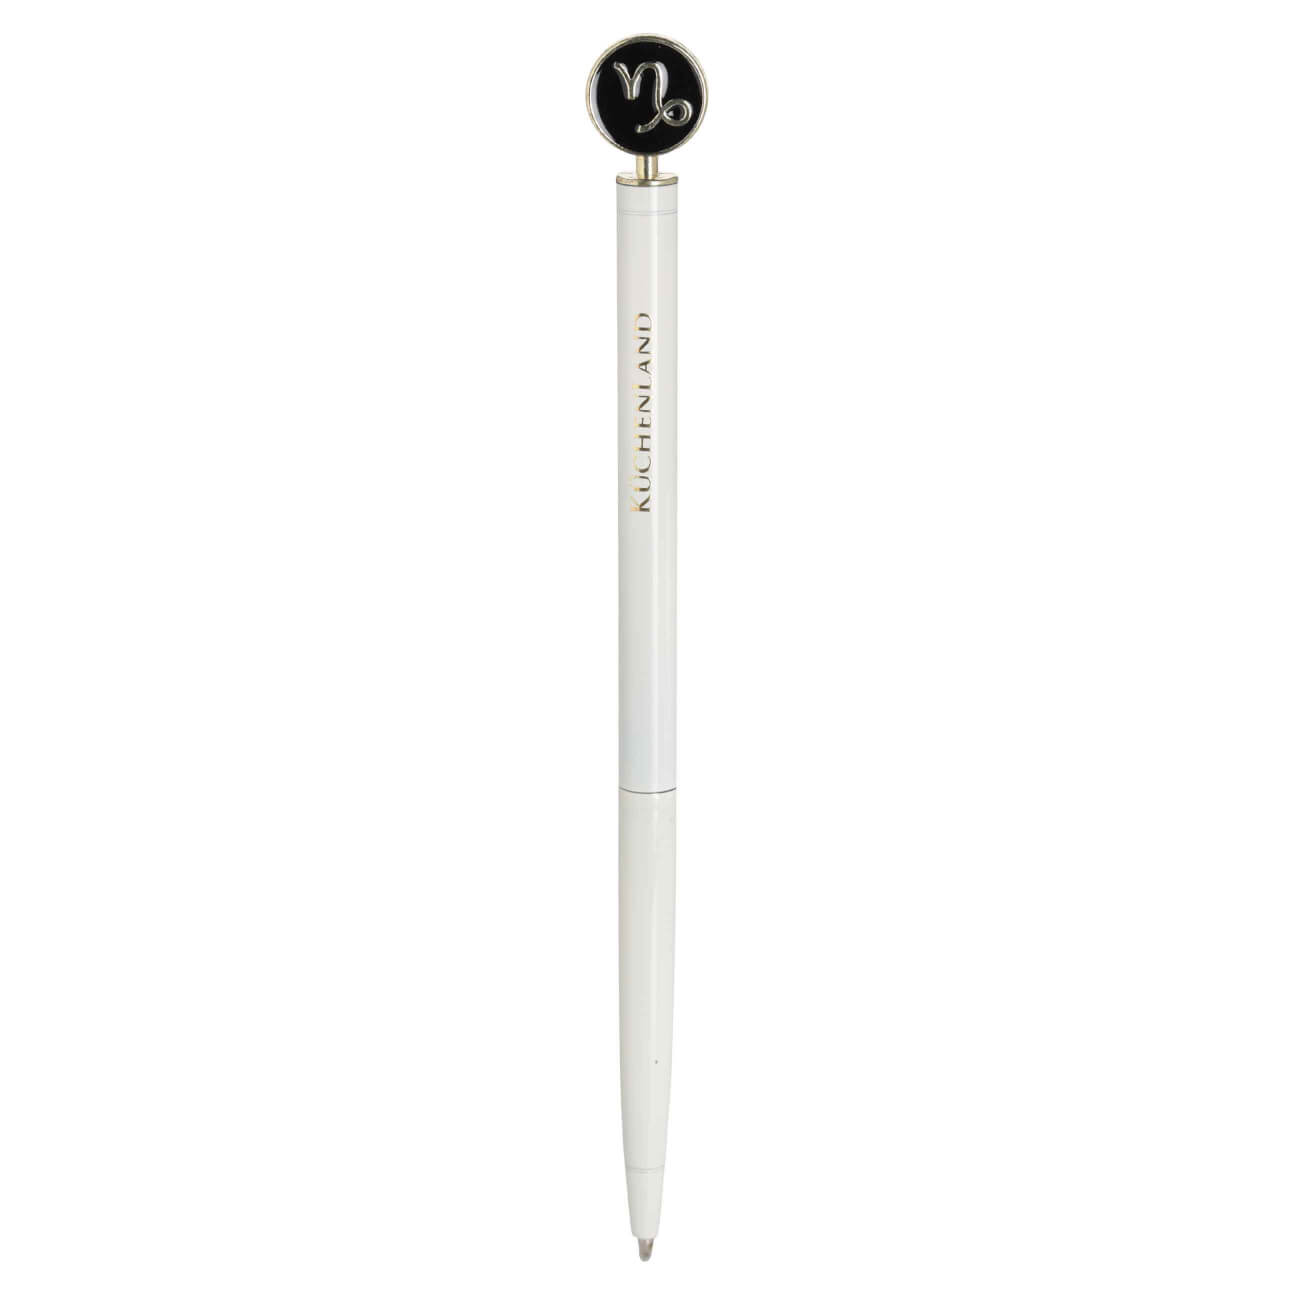 Ручка шариковая, 15 см, с фигуркой, сталь, молочно-золотистая, Козерог, Zodiac автоматическая шариковая ручка hatber